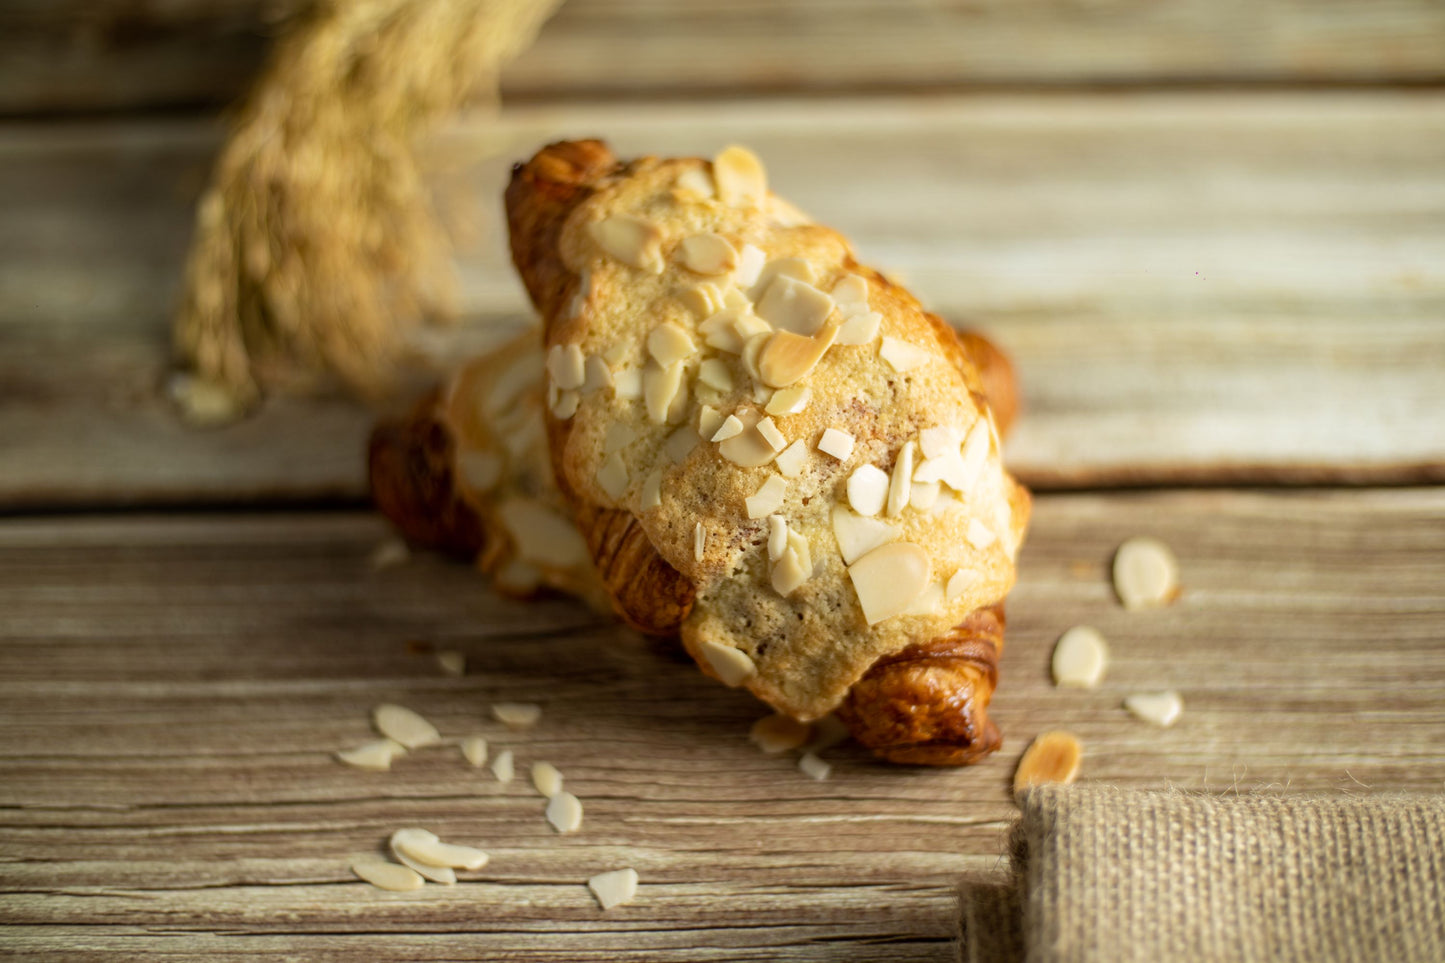 Croissant almond アーモンドクロワッサン